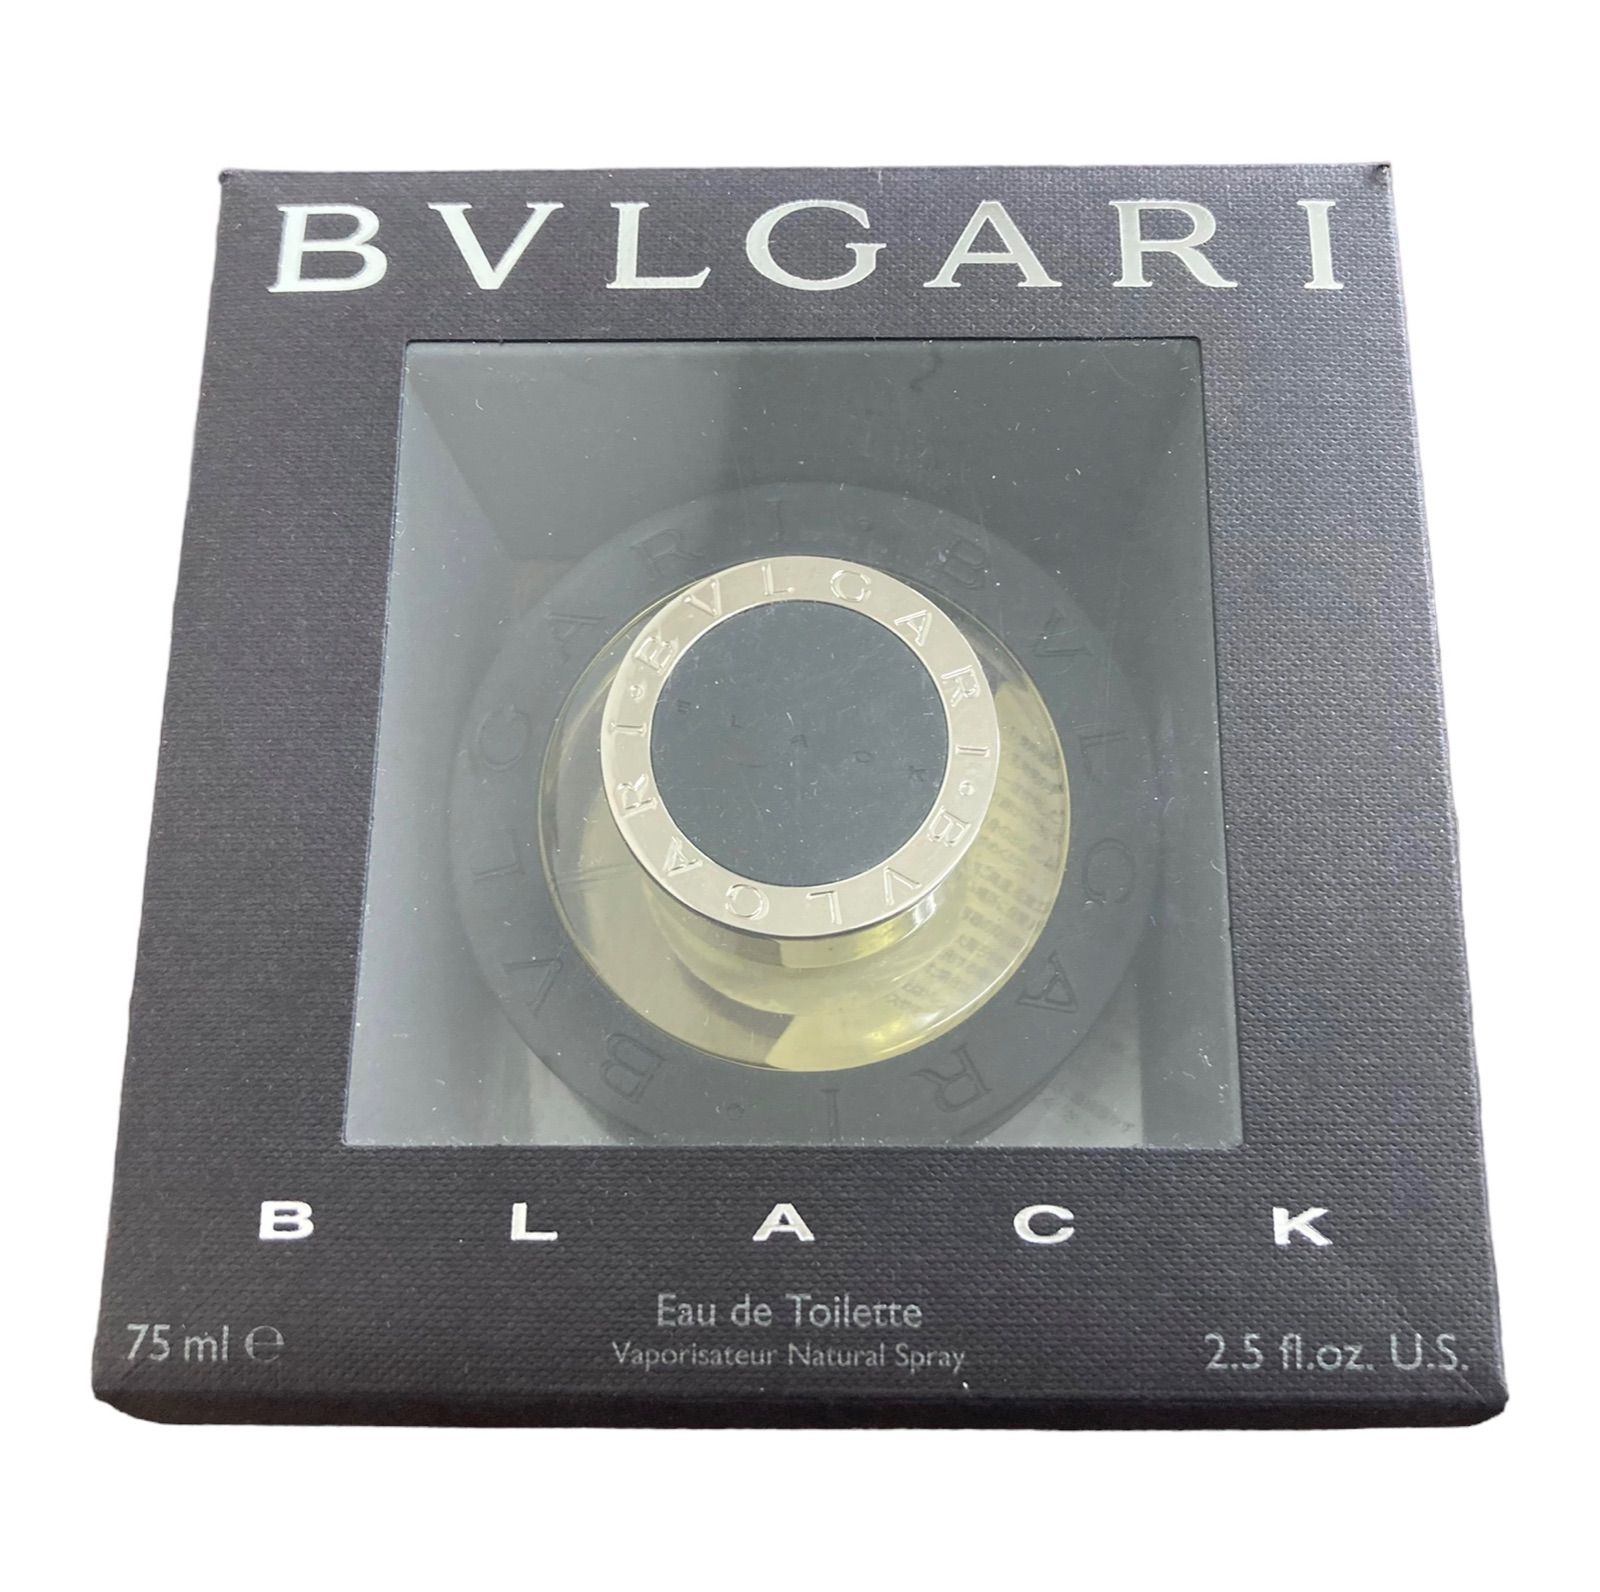 廃盤品 ブルガリ BVLGARI ブラック オードトワレ 75ml香水